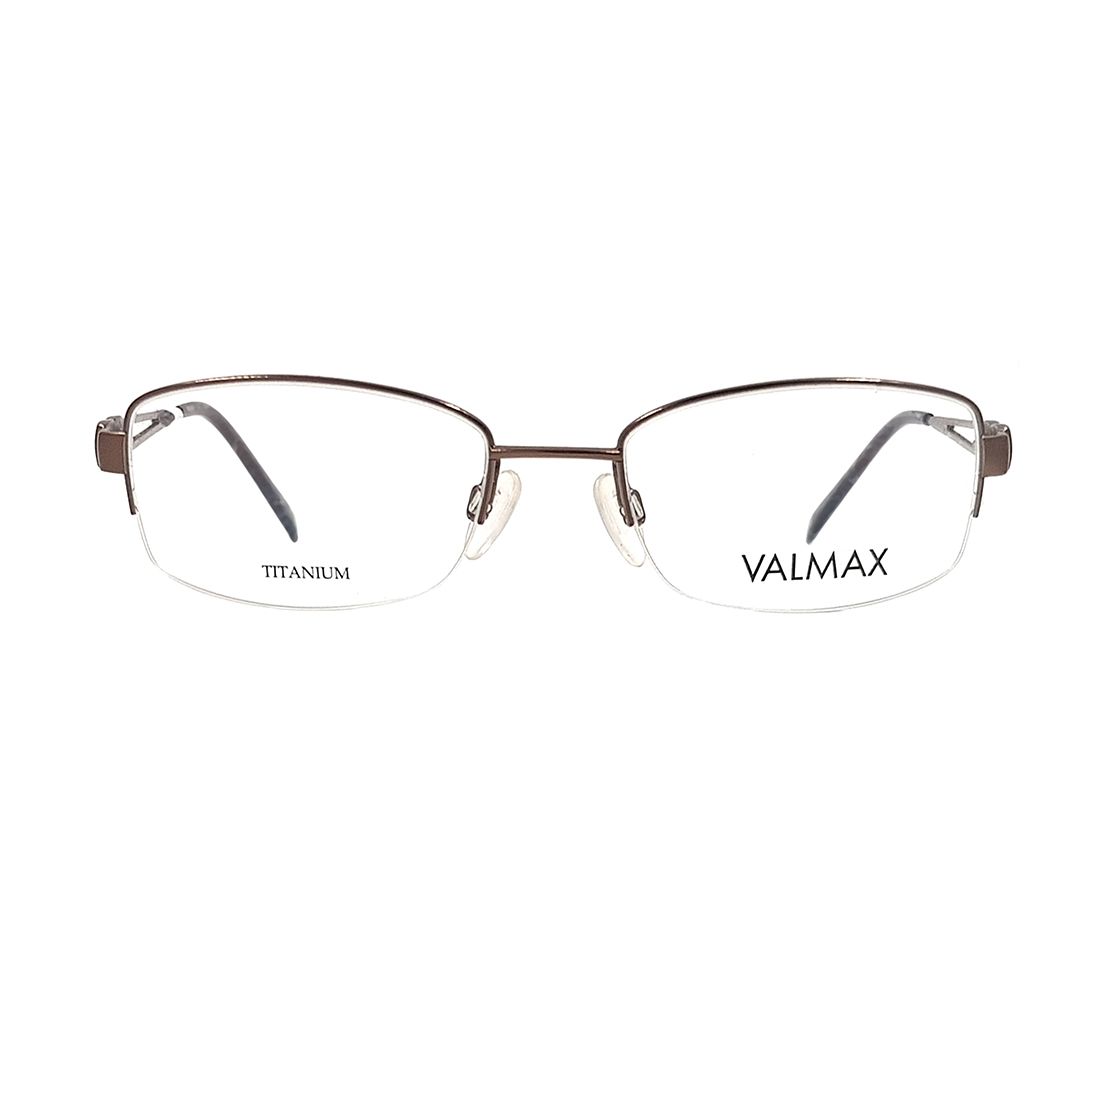  Gọng kính VALMAX VM16825 535 